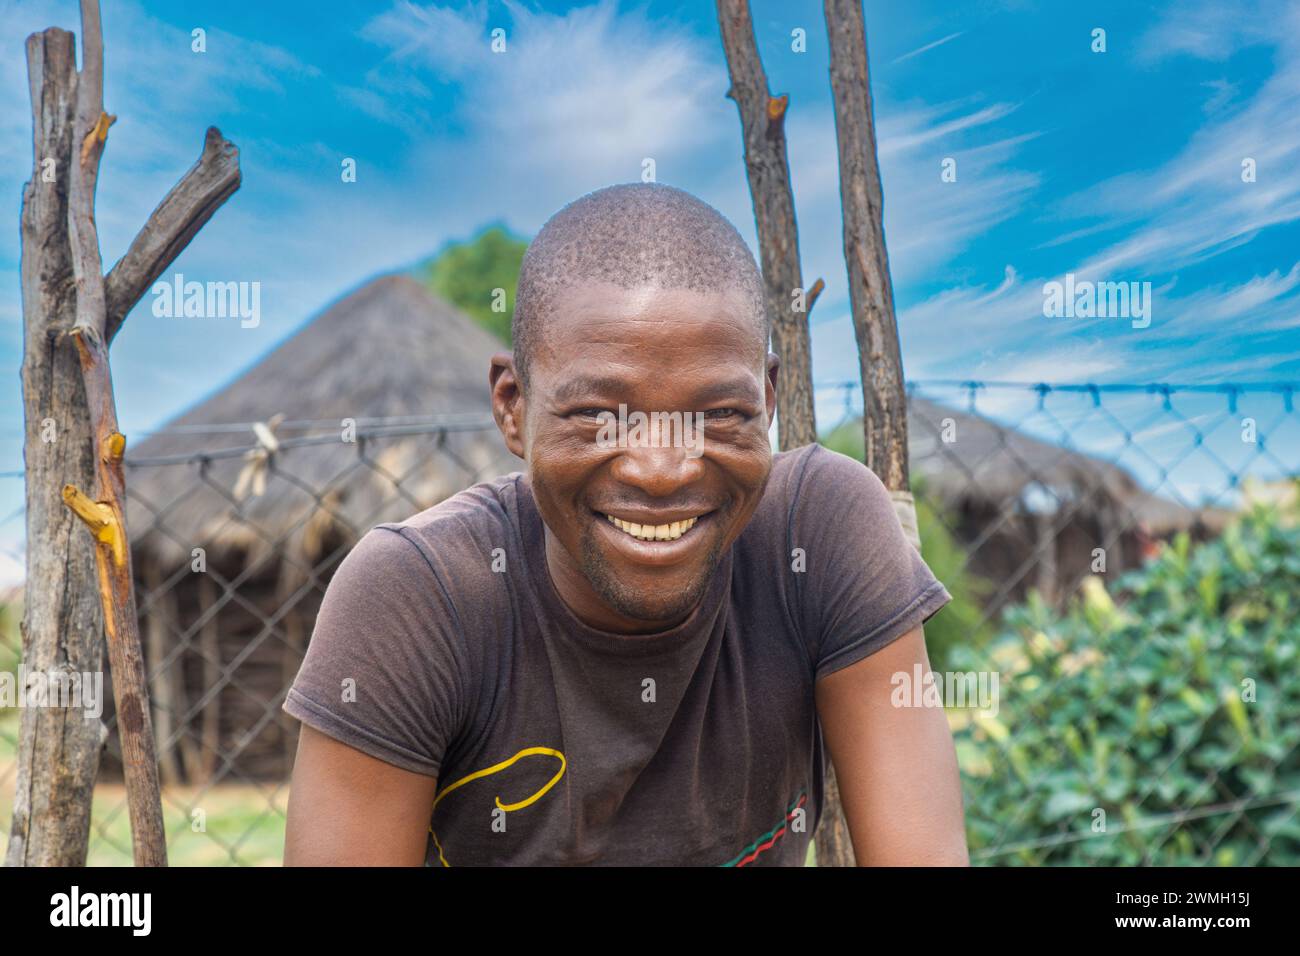 Glückliche afrikanische Männer, mit einem zahnigen Lächeln, stehen vor einer strohgedeckten Hütte. Stockfoto